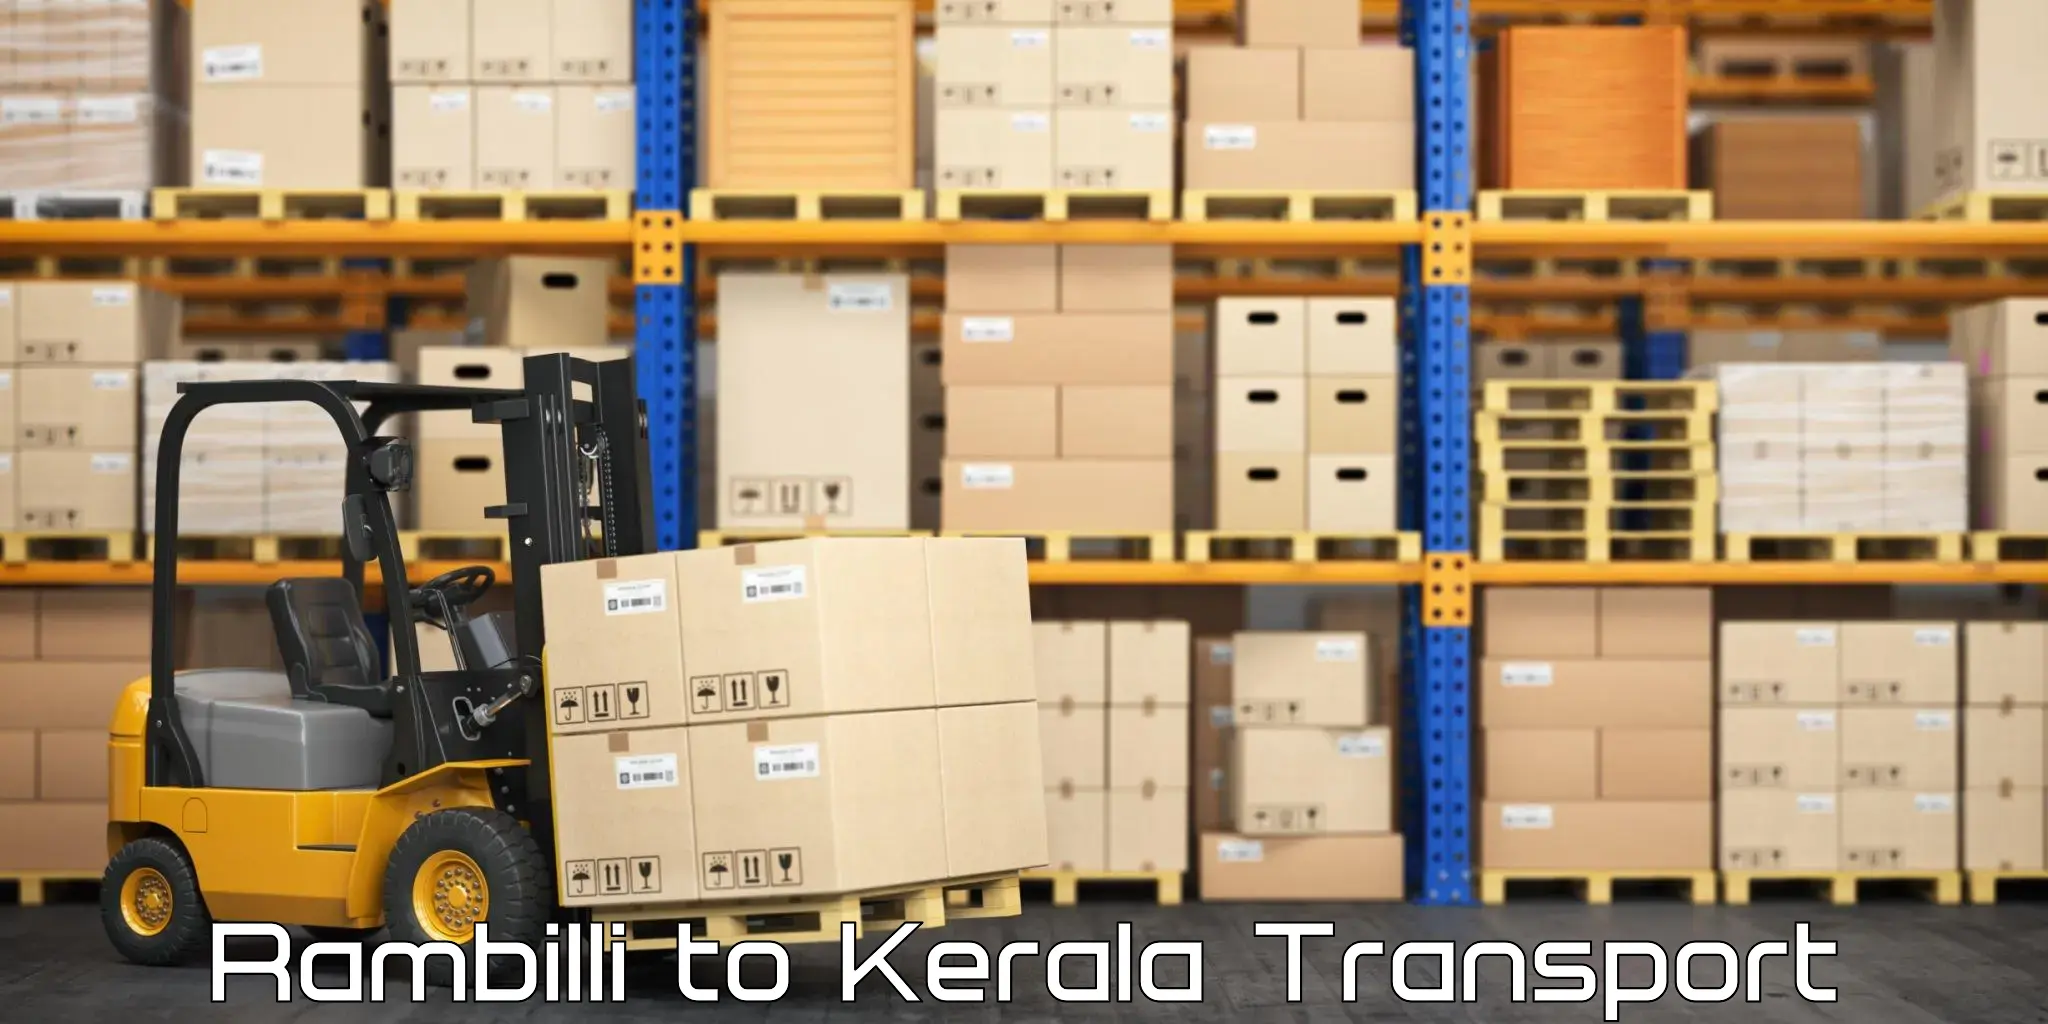 Shipping services Rambilli to Kallikkad